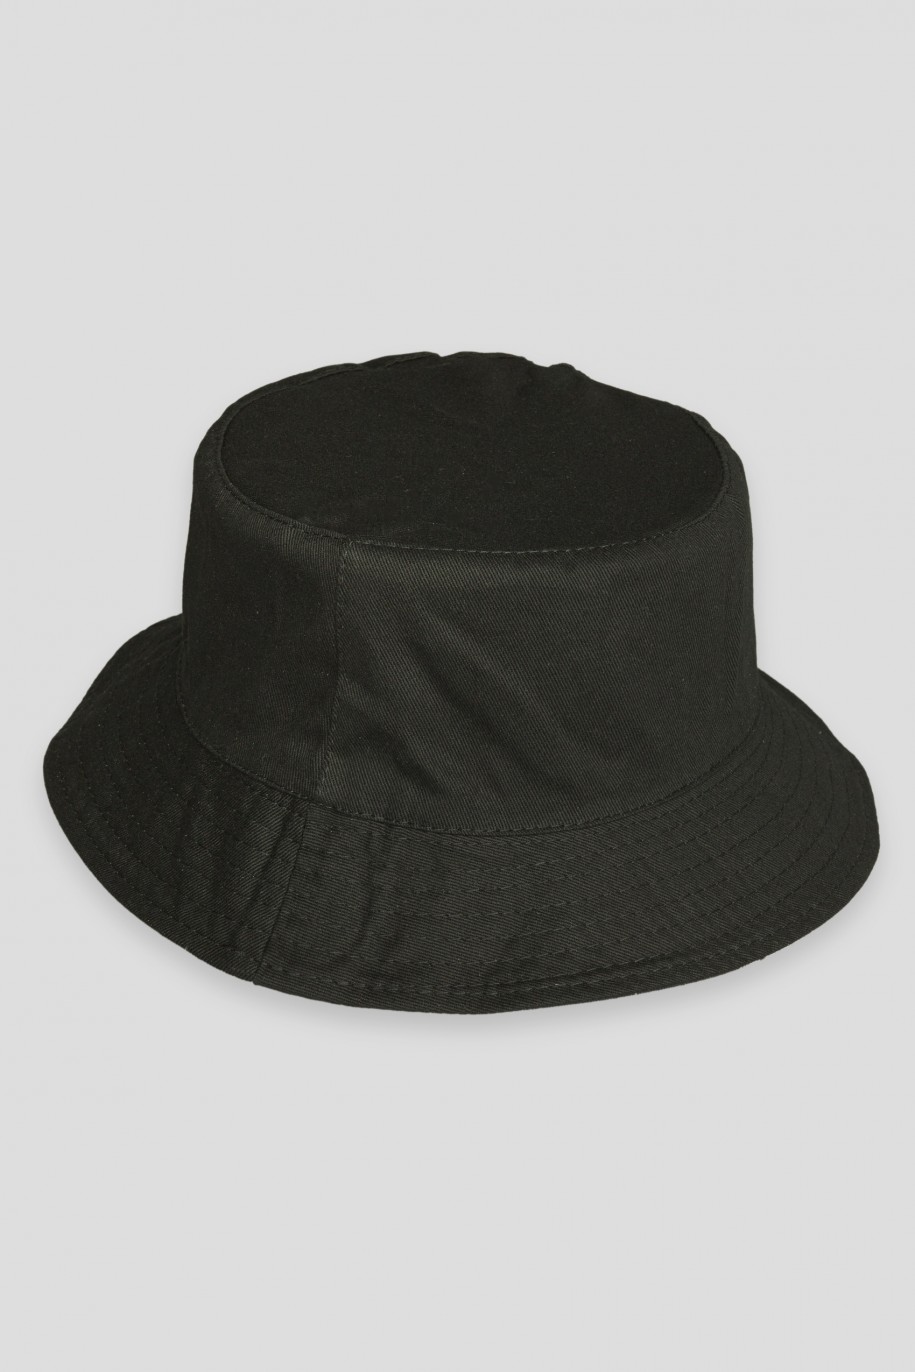 Czarny kapelusz typu bucket hat - 42710